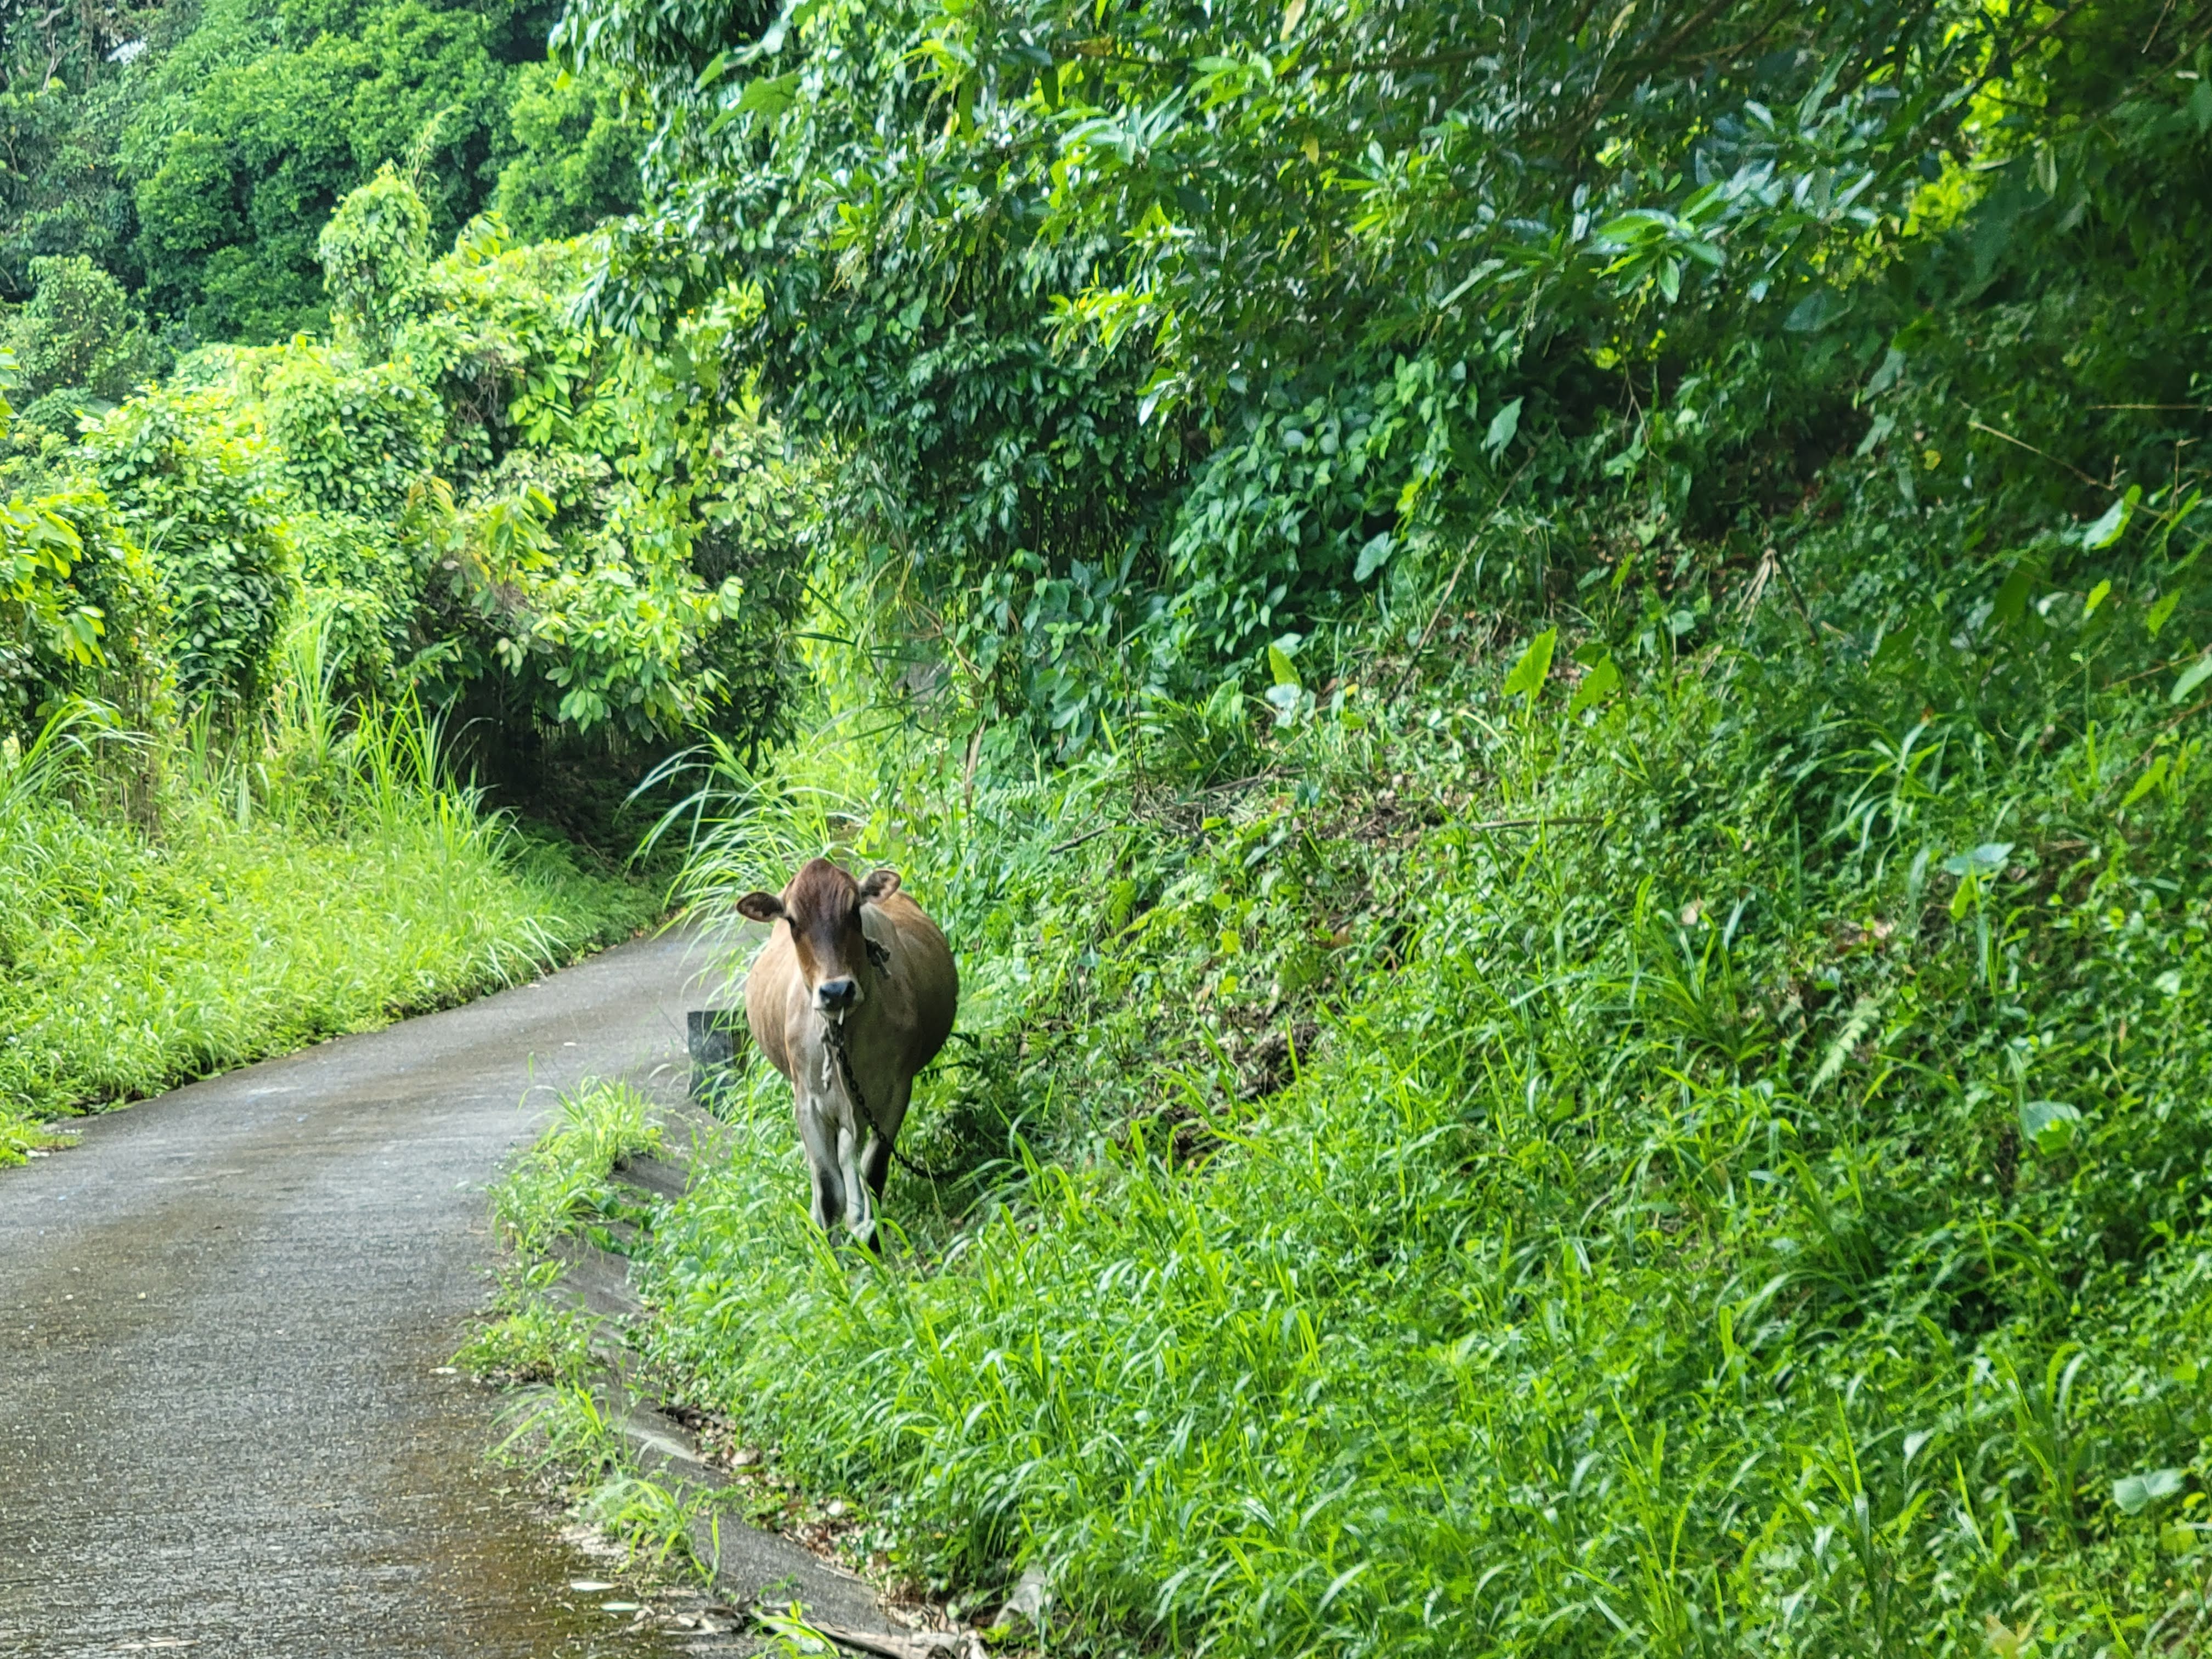 Road Cow Dirt Mountain Road Grenada